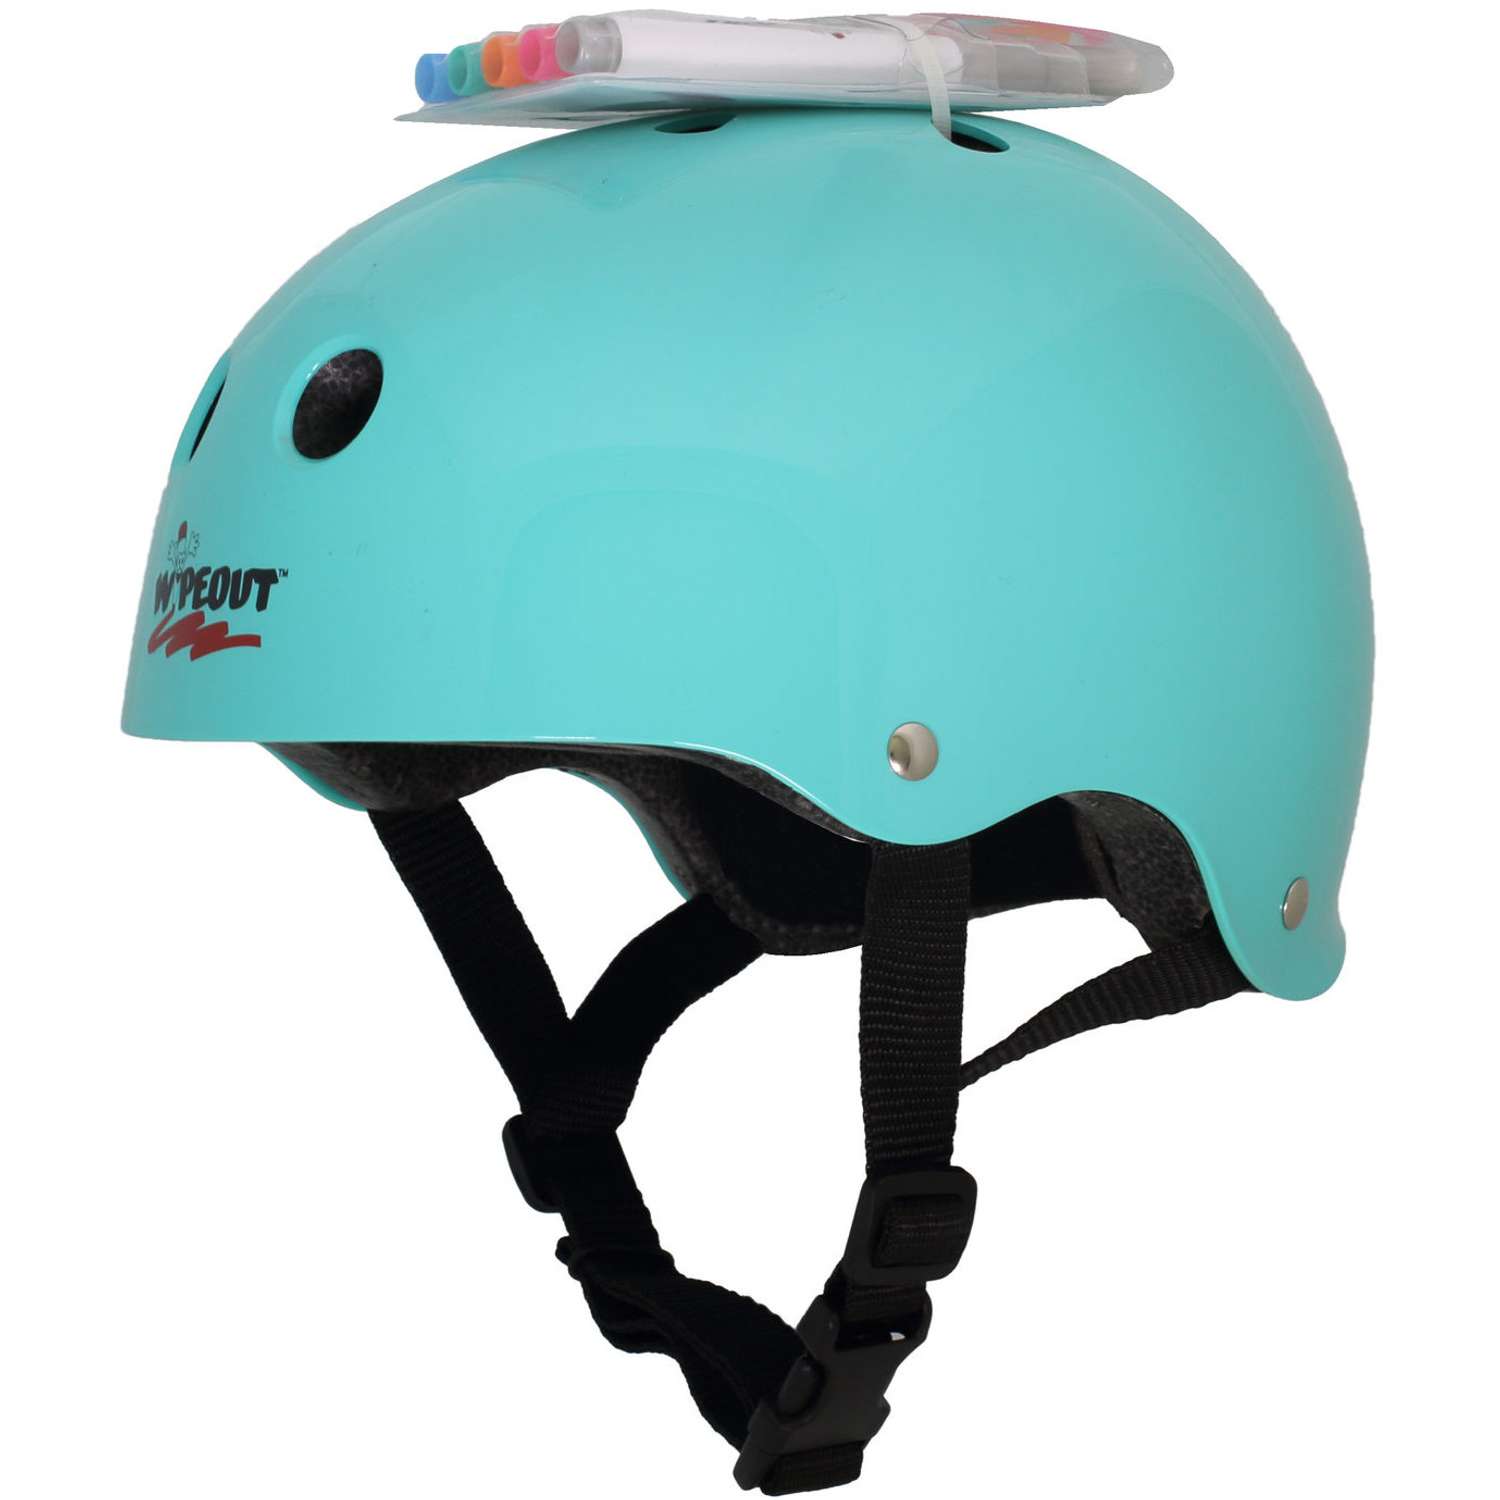 Шлем защитный спортивный WIPEOUT Teal Blue с фломастерами и трафаретами / размер M 5+ / обхват головы 49-52 см. - фото 2